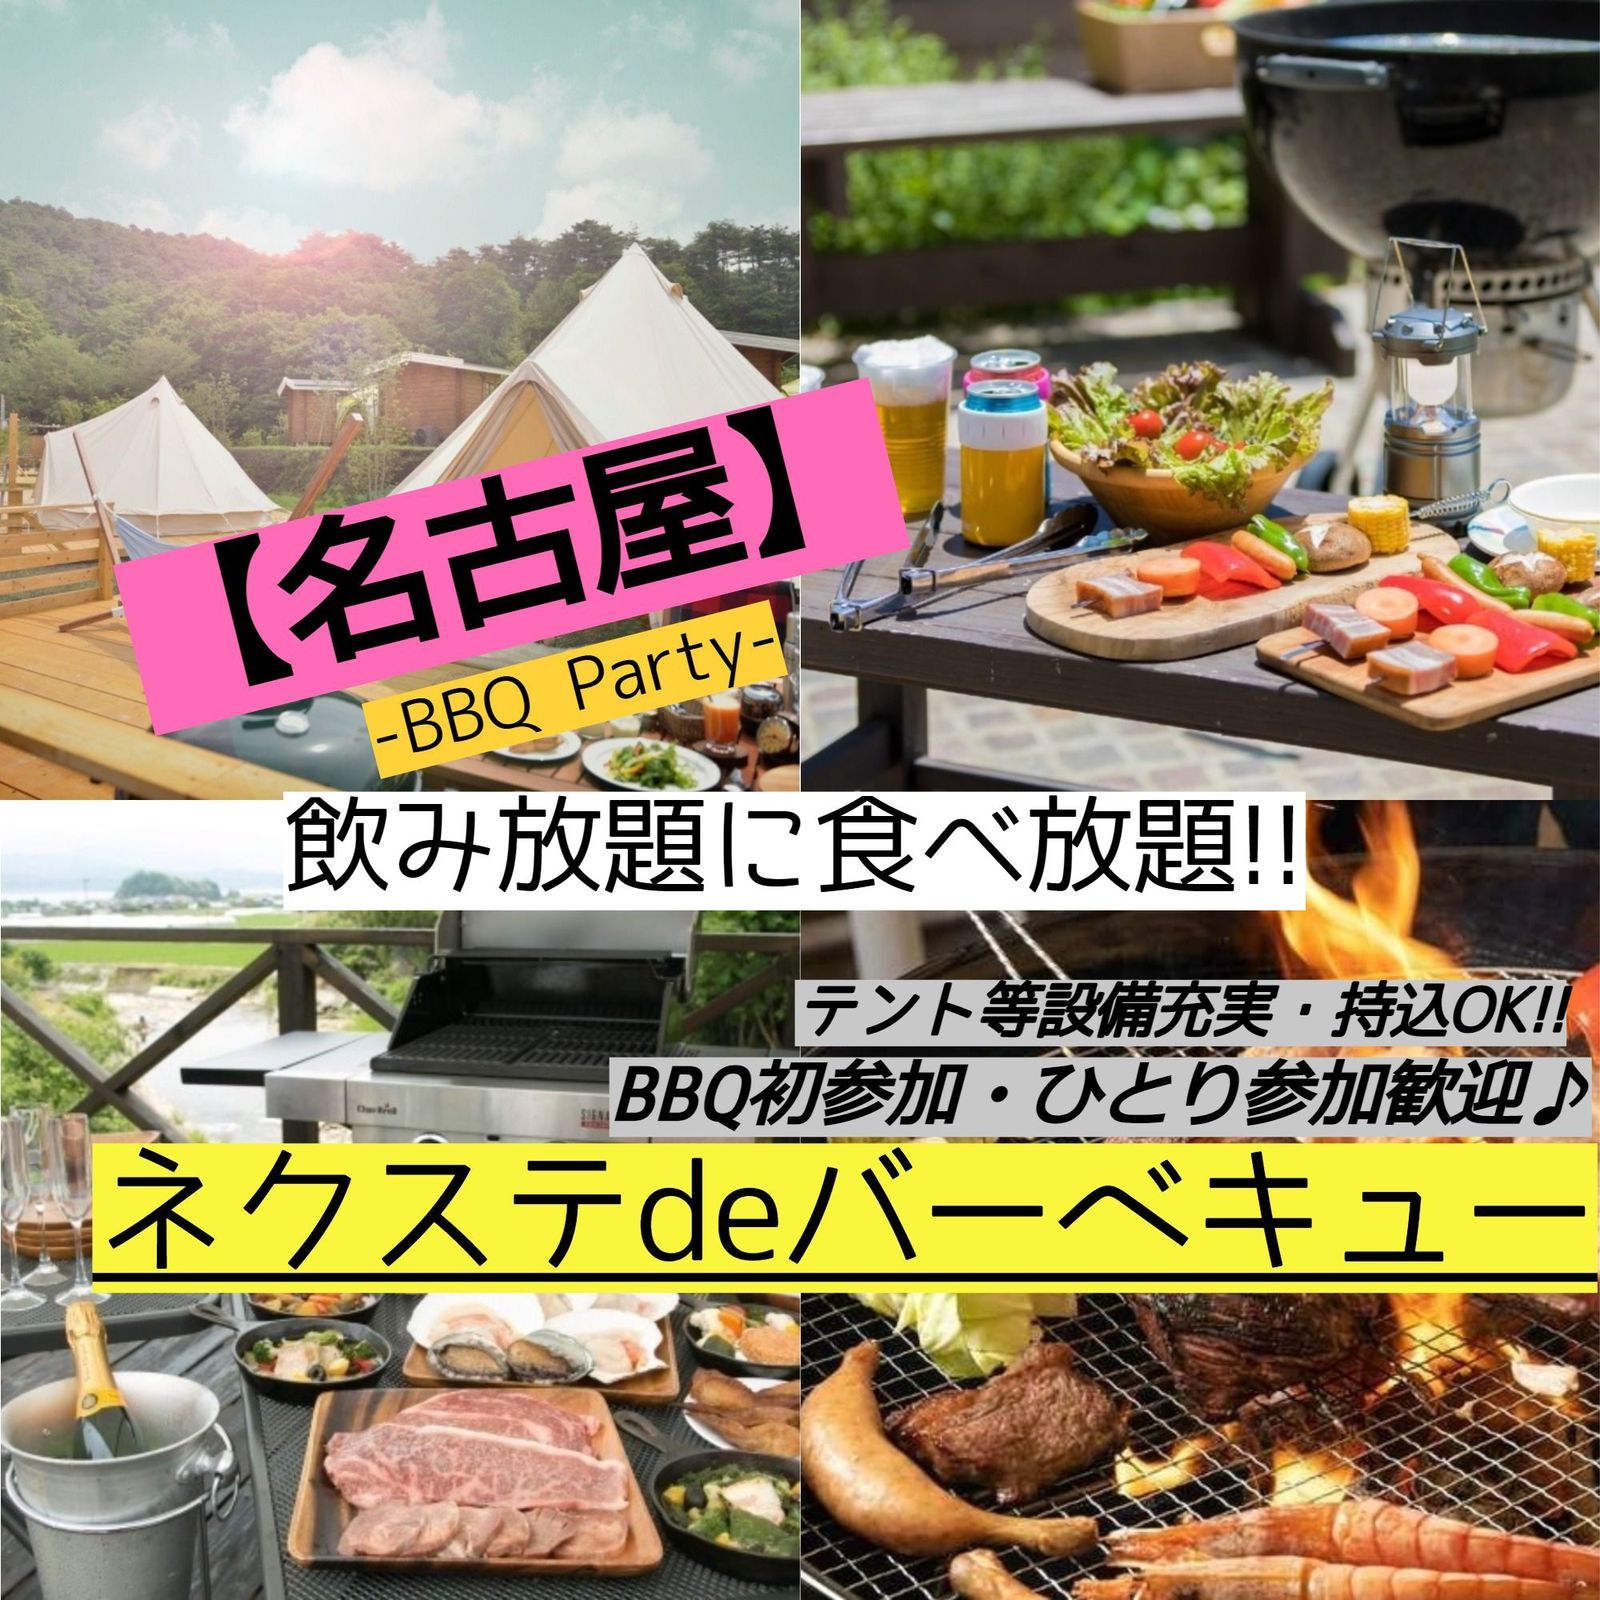 7月30日(日曜)【毎月2回開催・名古屋市内・BBQ】飲み・食べ放題!!素敵に本格的なBBQ♪【ネクステdeバーベキュー会】